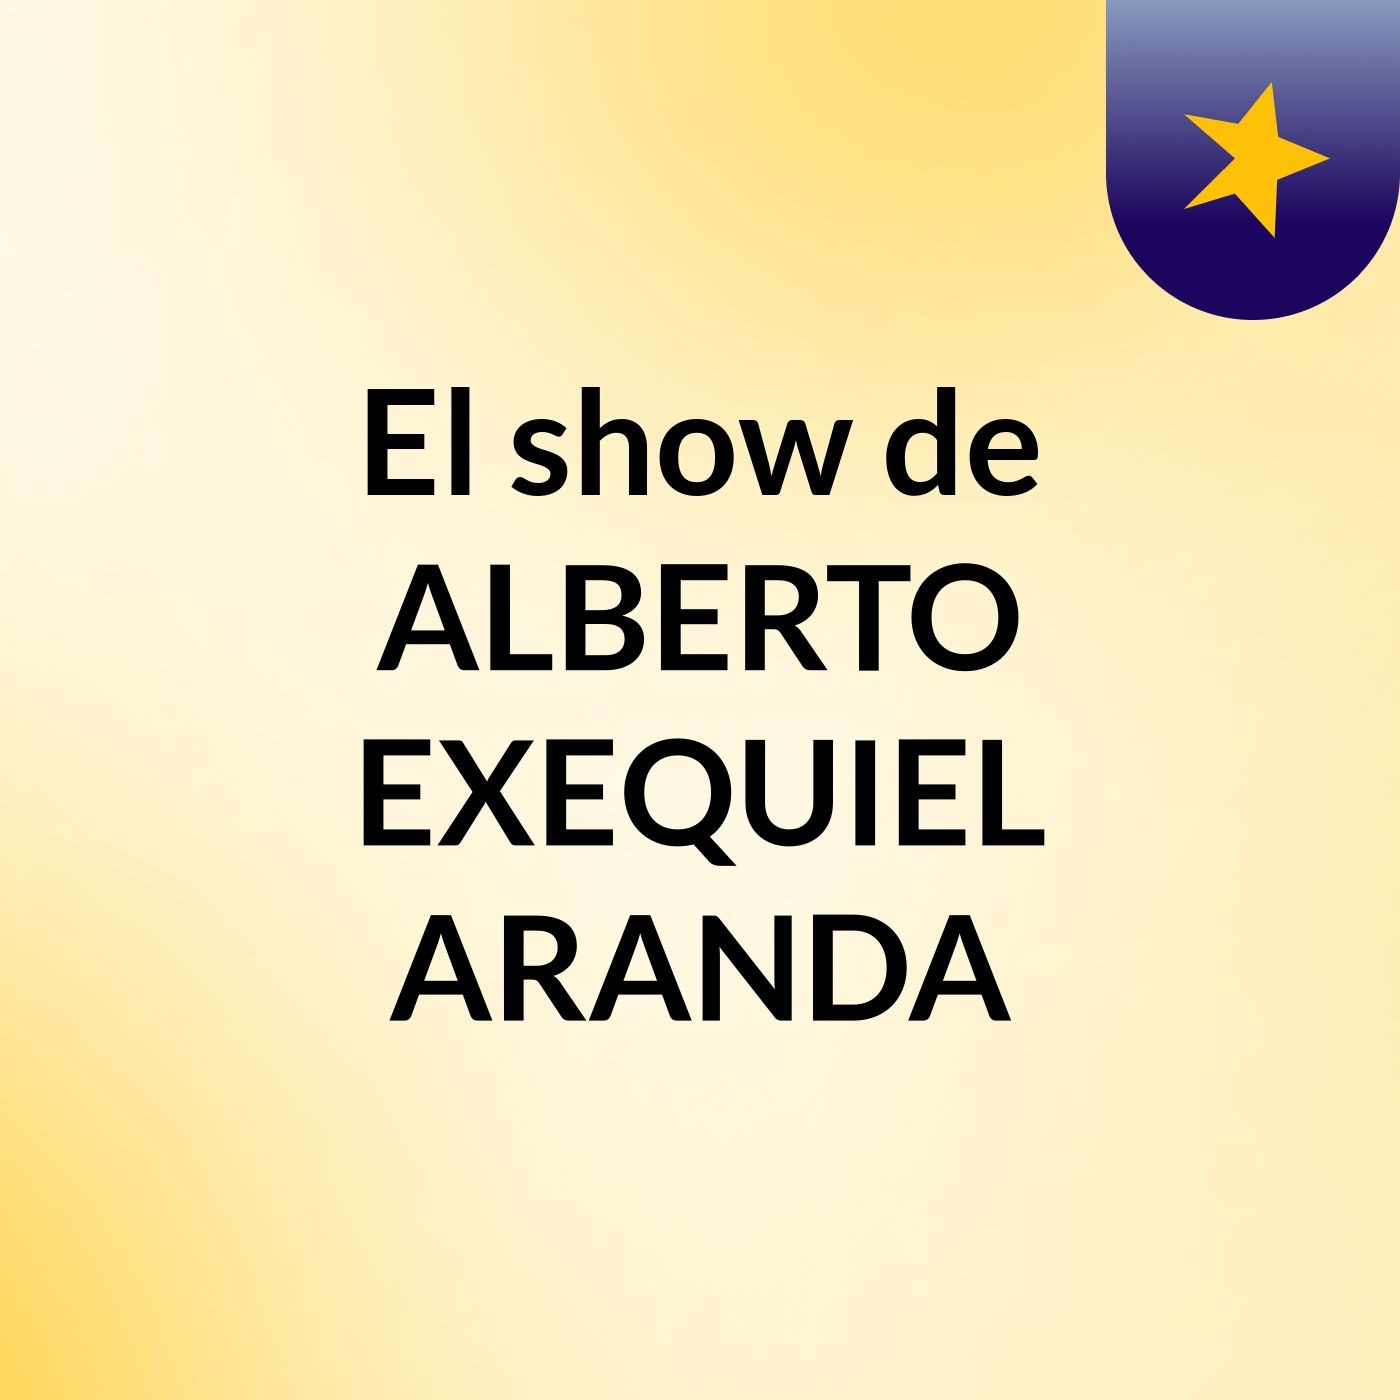 El show de ALBERTO EXEQUIEL ARANDA